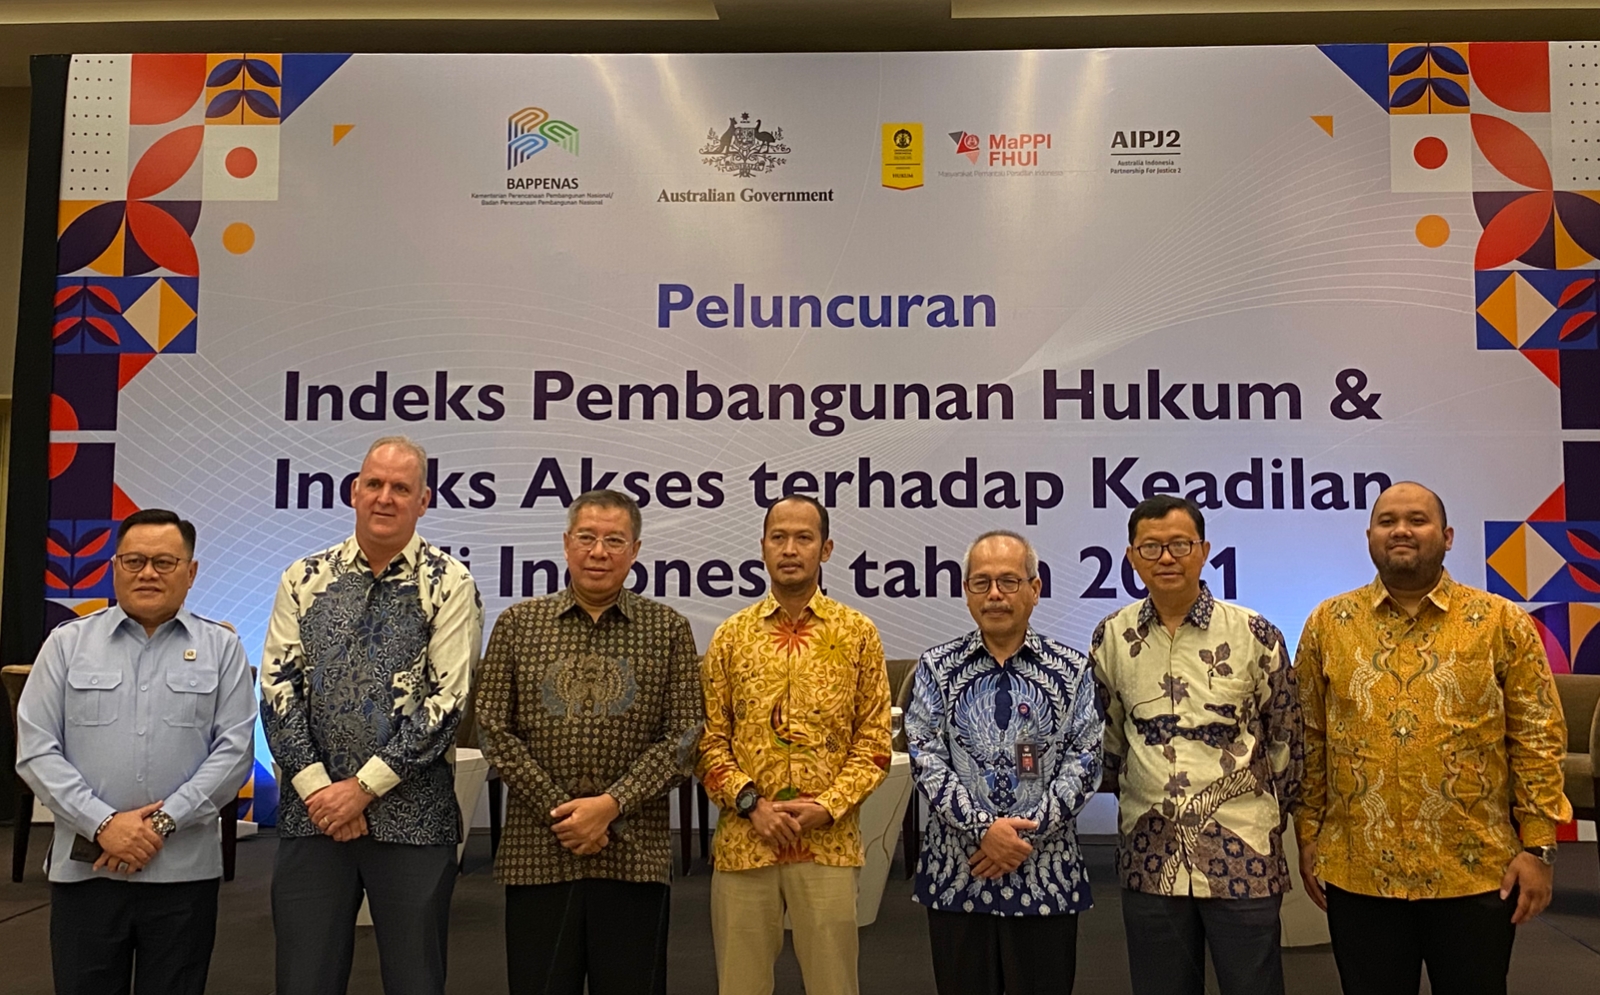 Peluncuran Indeks Pembangunan Hukum & Indeks Akses Terhadap Keadilan di Indonesia tahun 2021